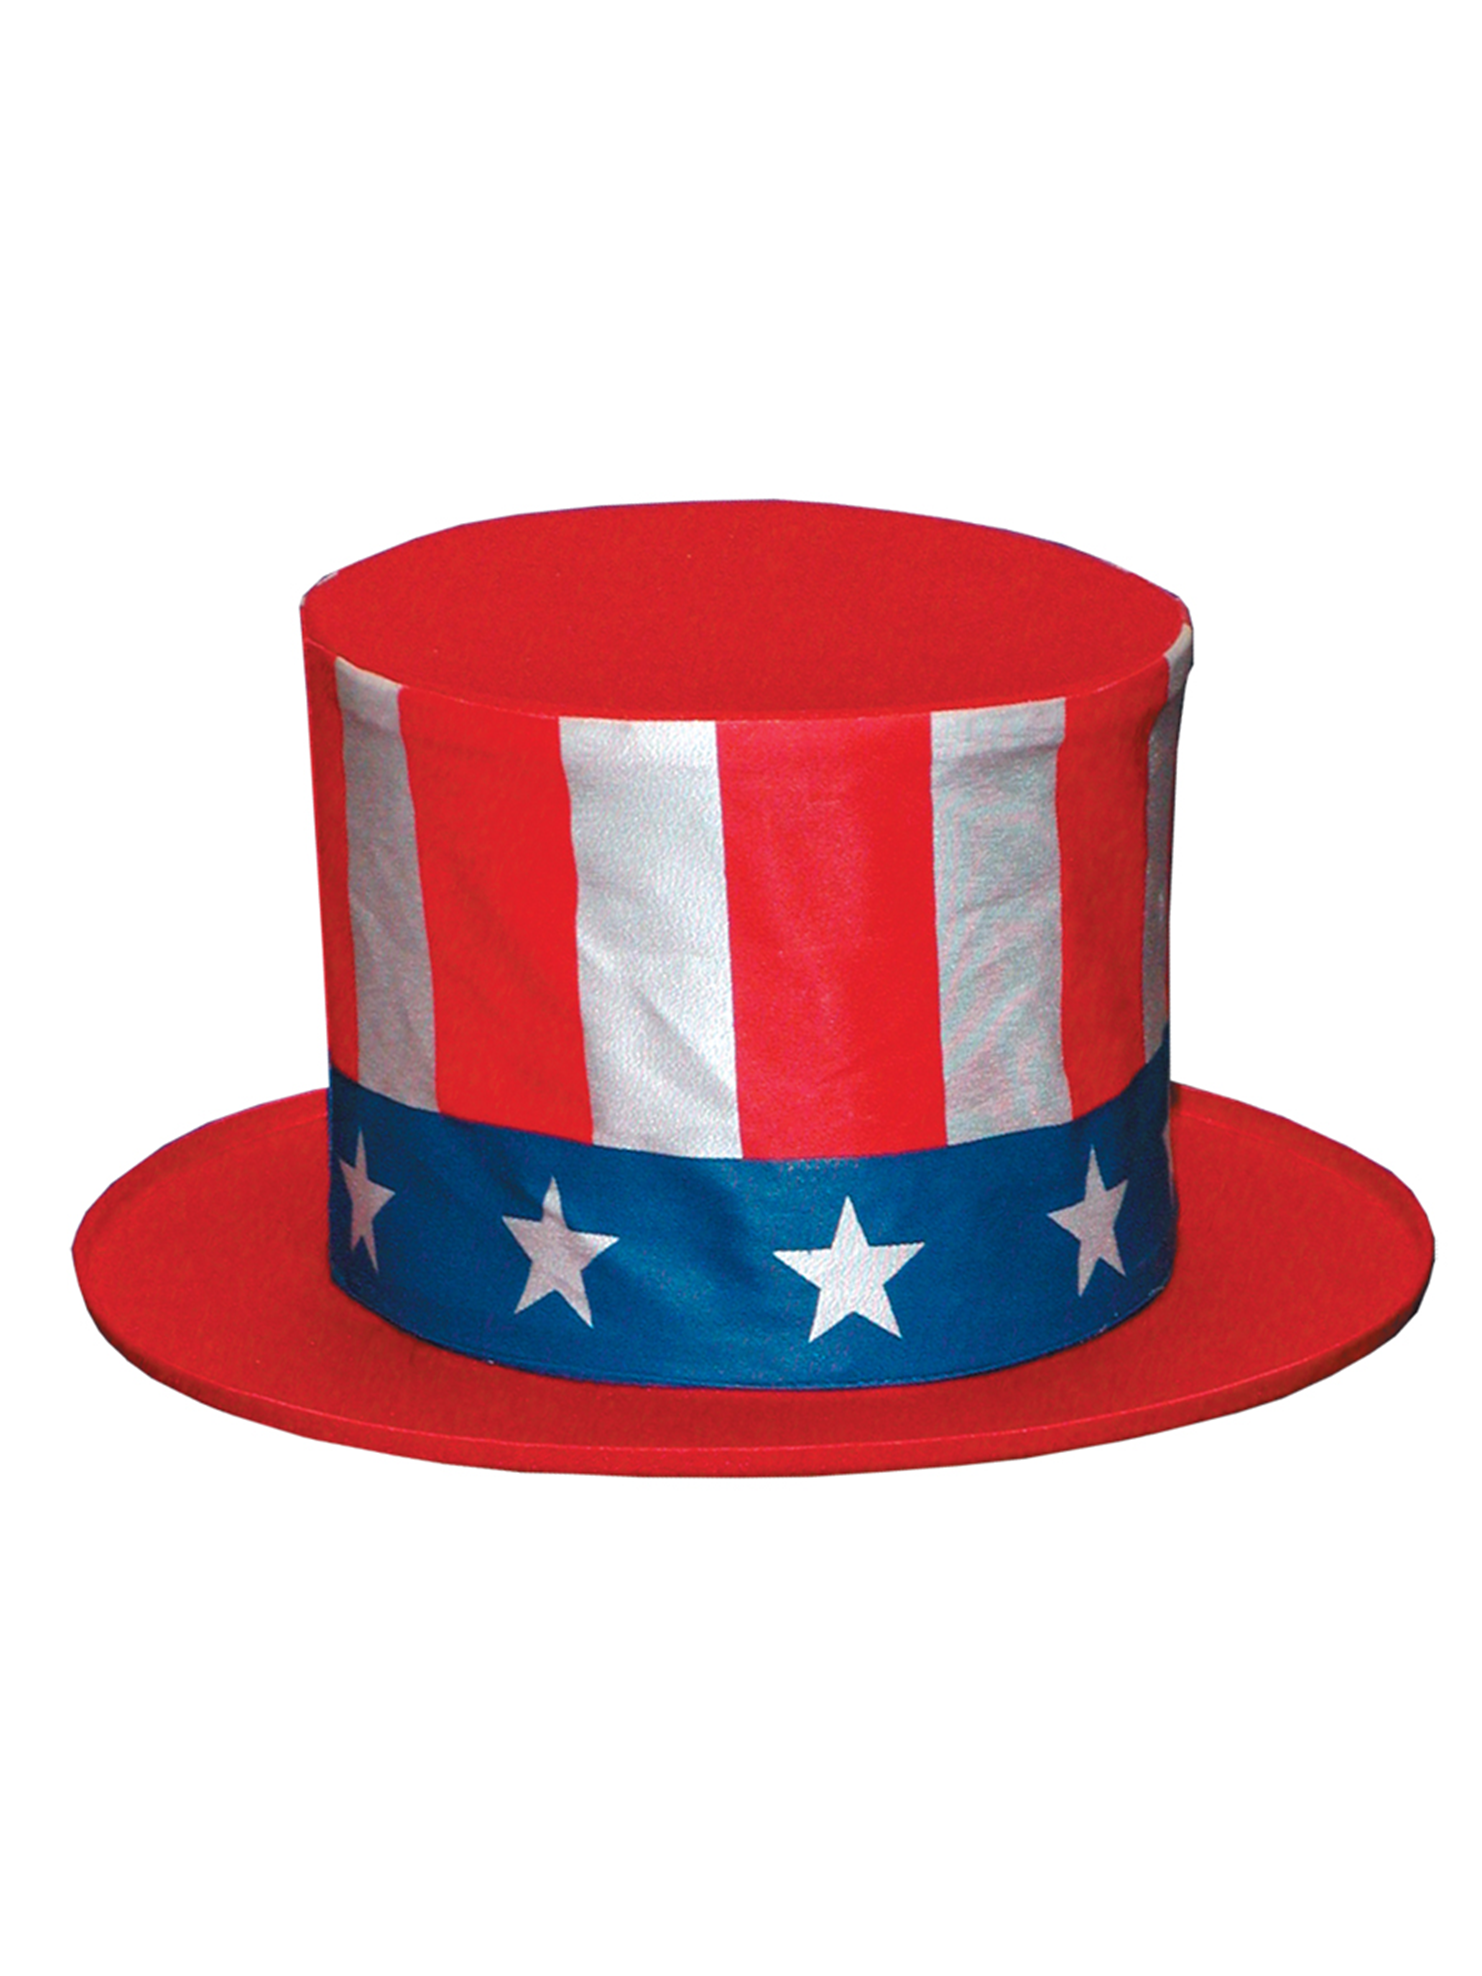 Шляпа дяди Сэма. Дядя Сэм в американской шляпе. Американская шляпа. Американский цилиндр. Шляпа америка